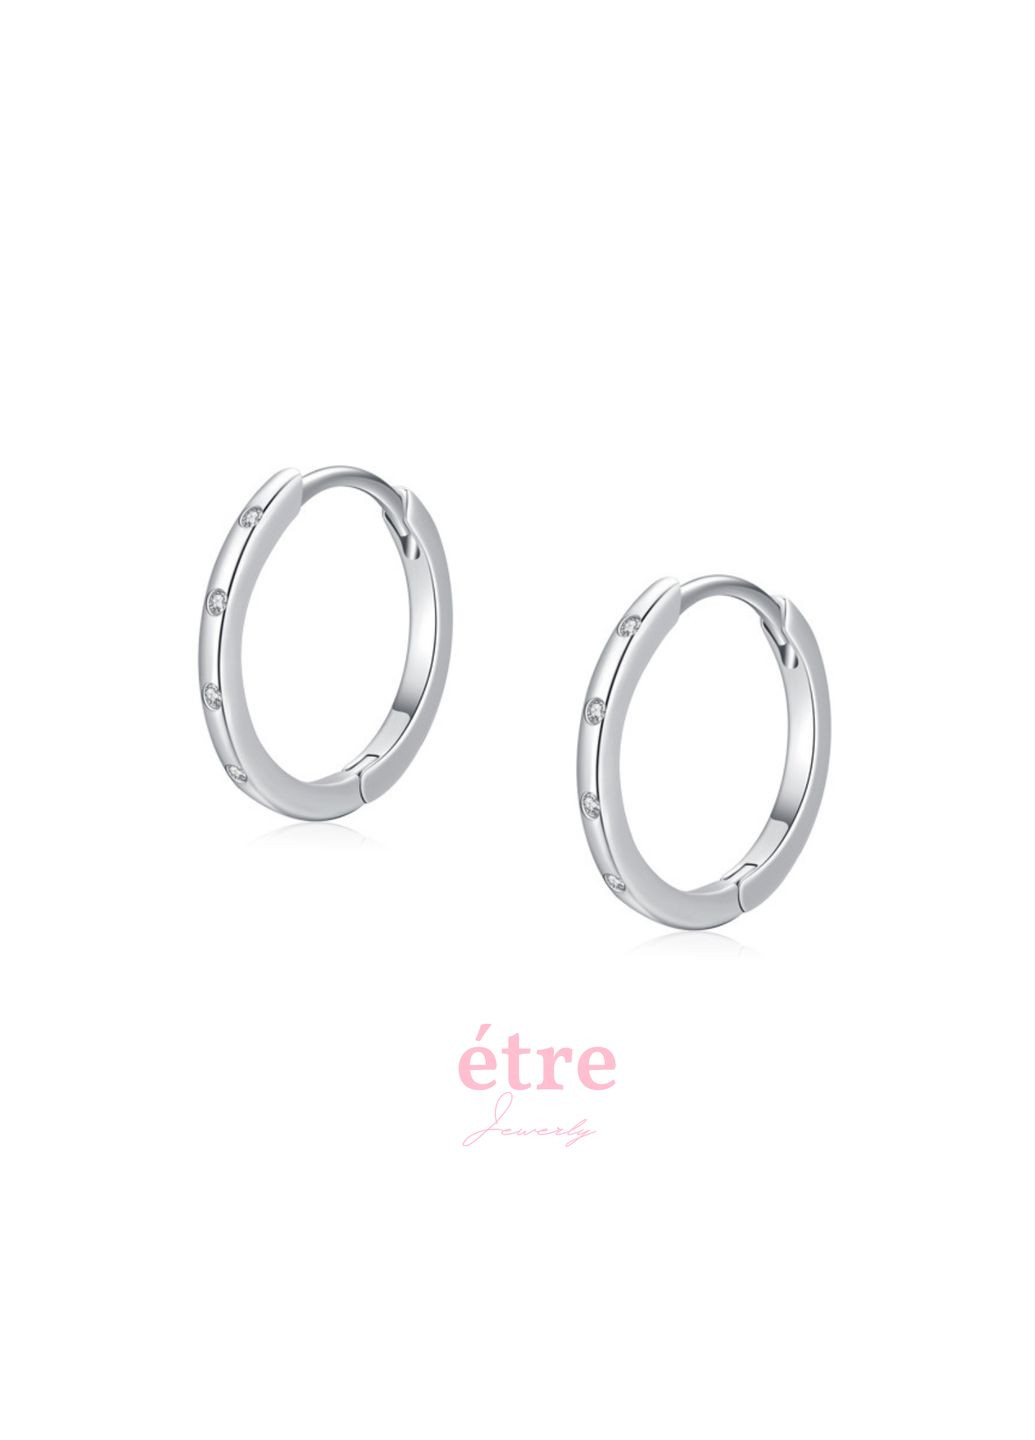 Серьги кольца серебряные минимализм, стильные серебряные S 925 серьги кольца, модные кольца подарок девушке СКС5 Италия Etre (292318477)